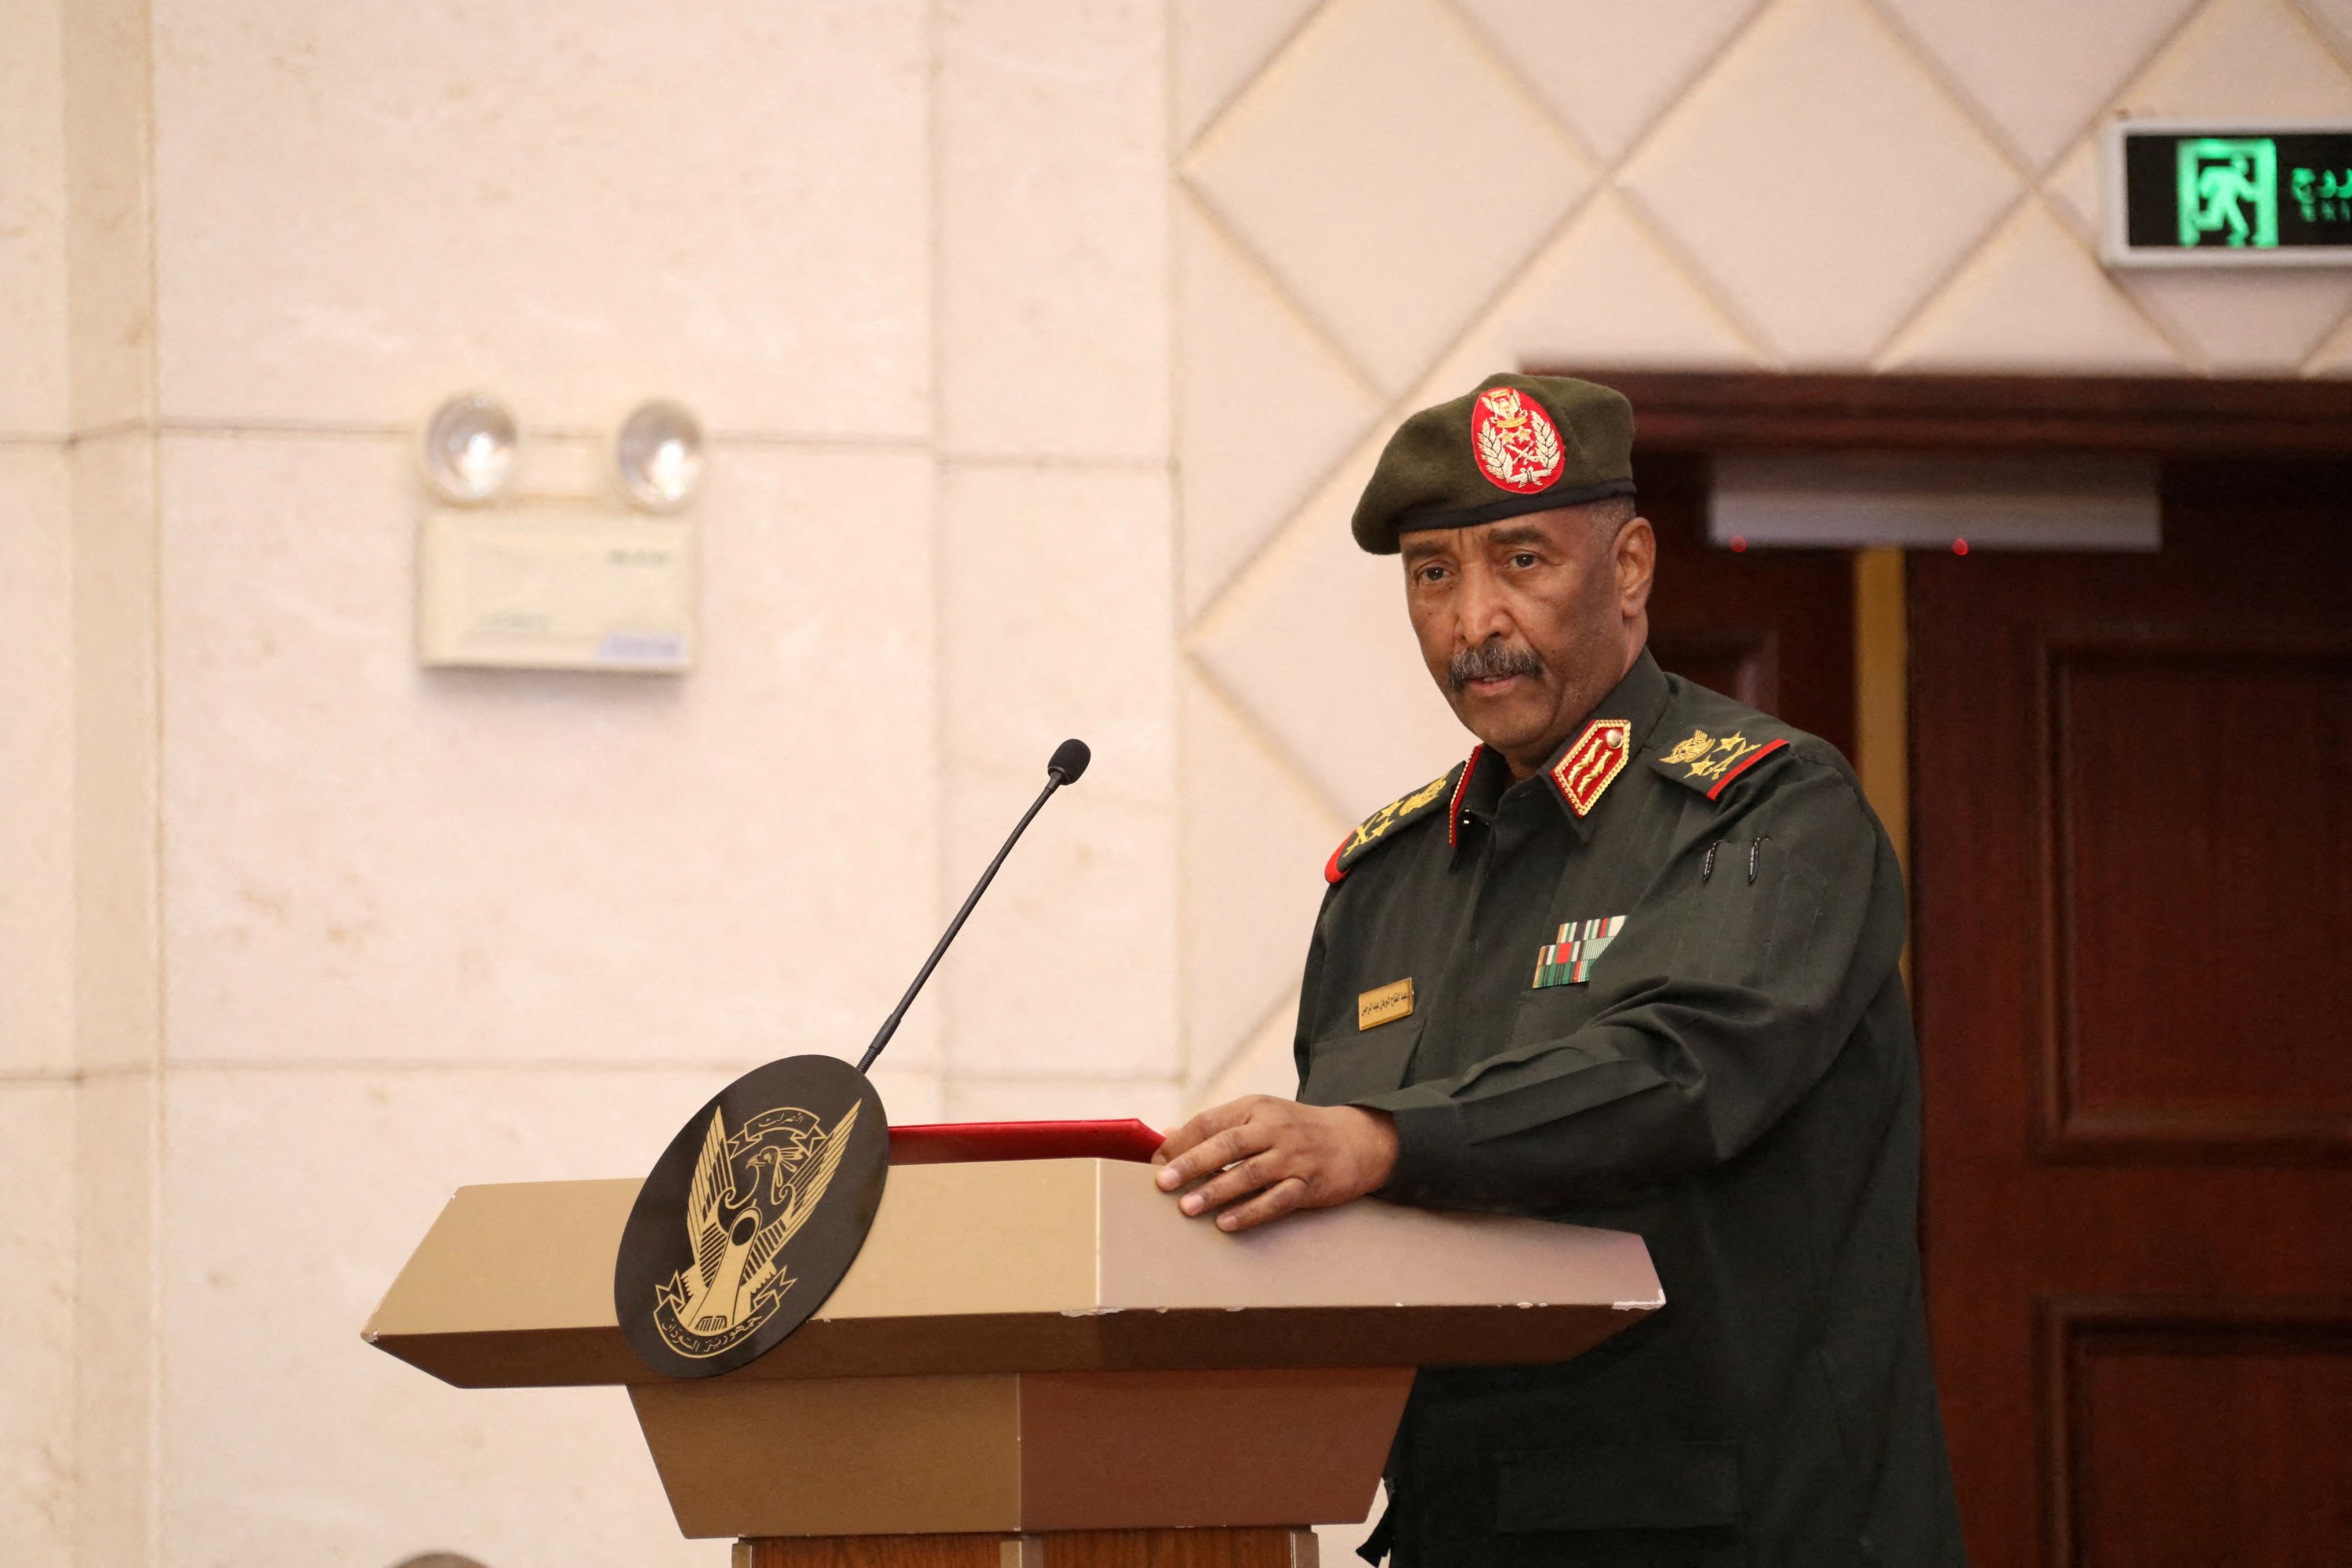 Pemimpin militer Sudan Jenderal Abdel Fattah al-Burhan dalam sebuah upacara, Khartoum, Sudan, 5 Desember 2022. (Foto Reuters)